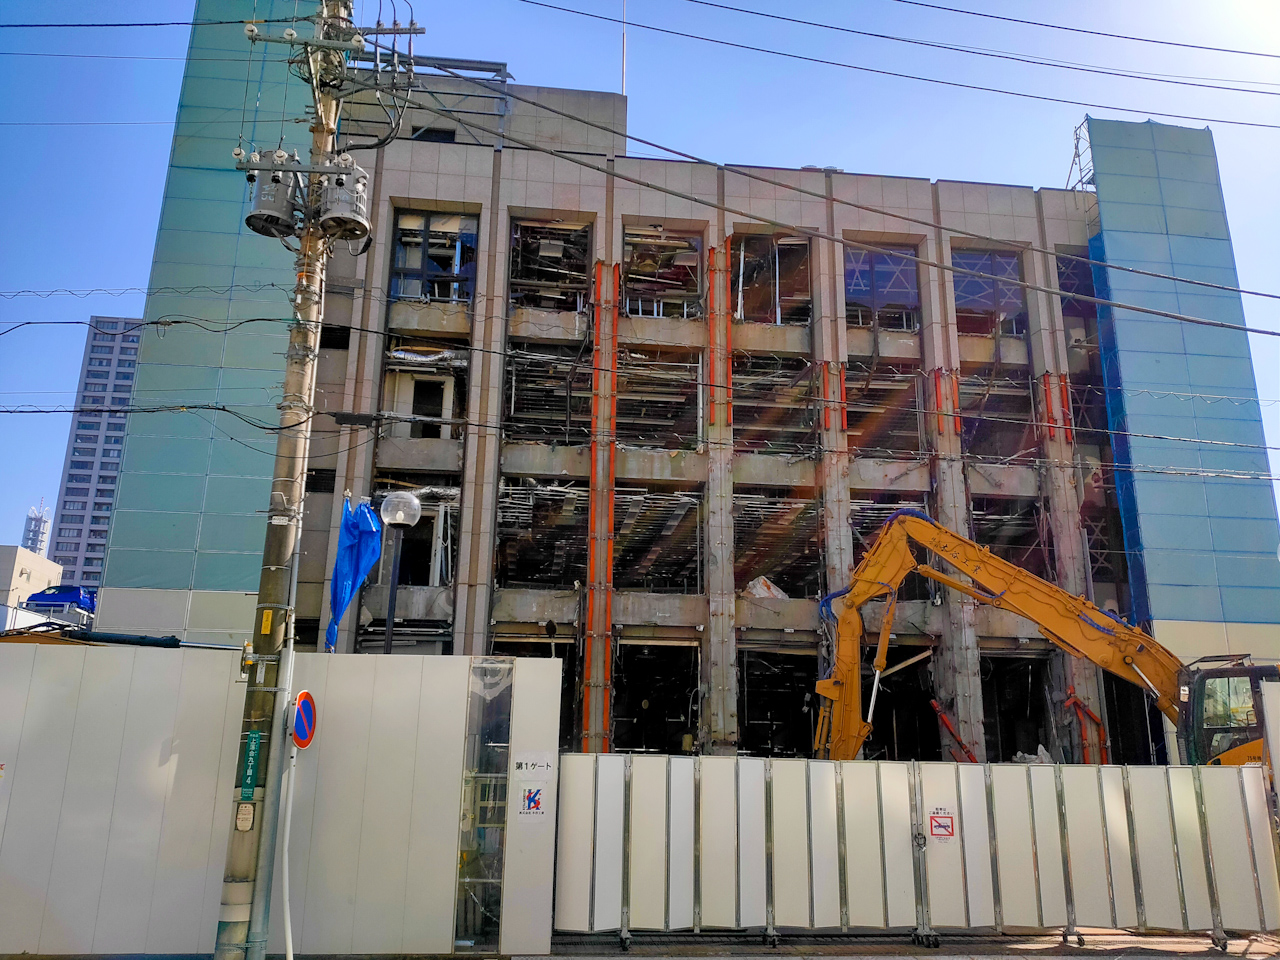 【解体】「パラマウントベッド さいたま支店」ビル 2021年8月31日(火)まで解体工事予定